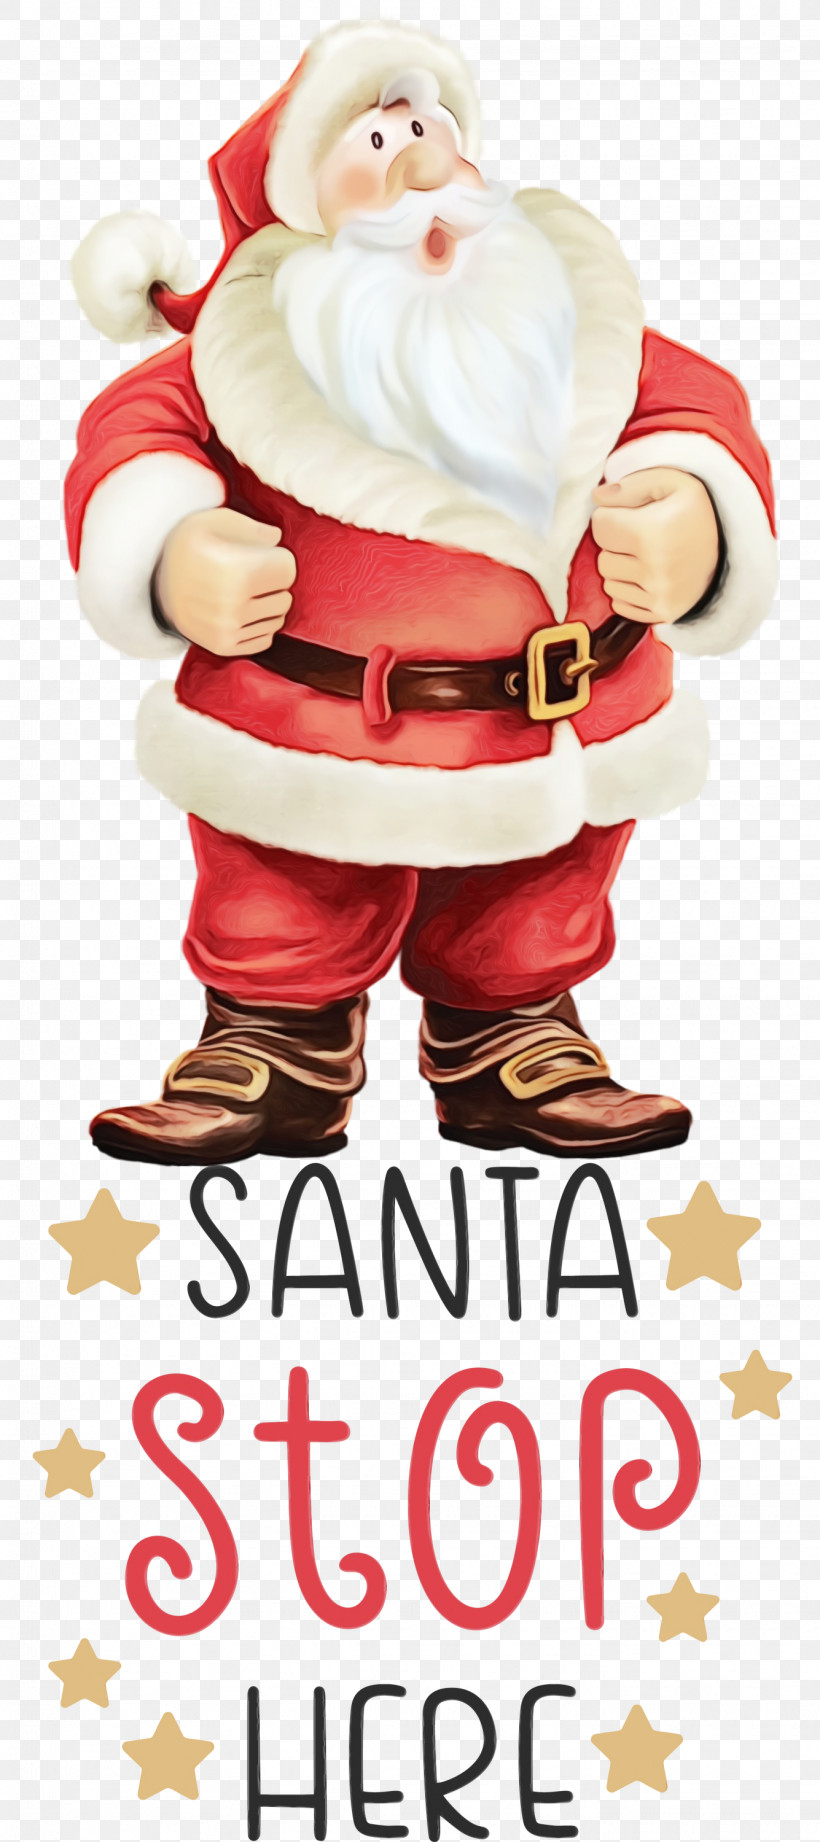 Santa Claus, PNG, 1335x3000px, Santa Stop Here, Christmas, Christmas Card, Christmas Day, Christmas Gift Download Free